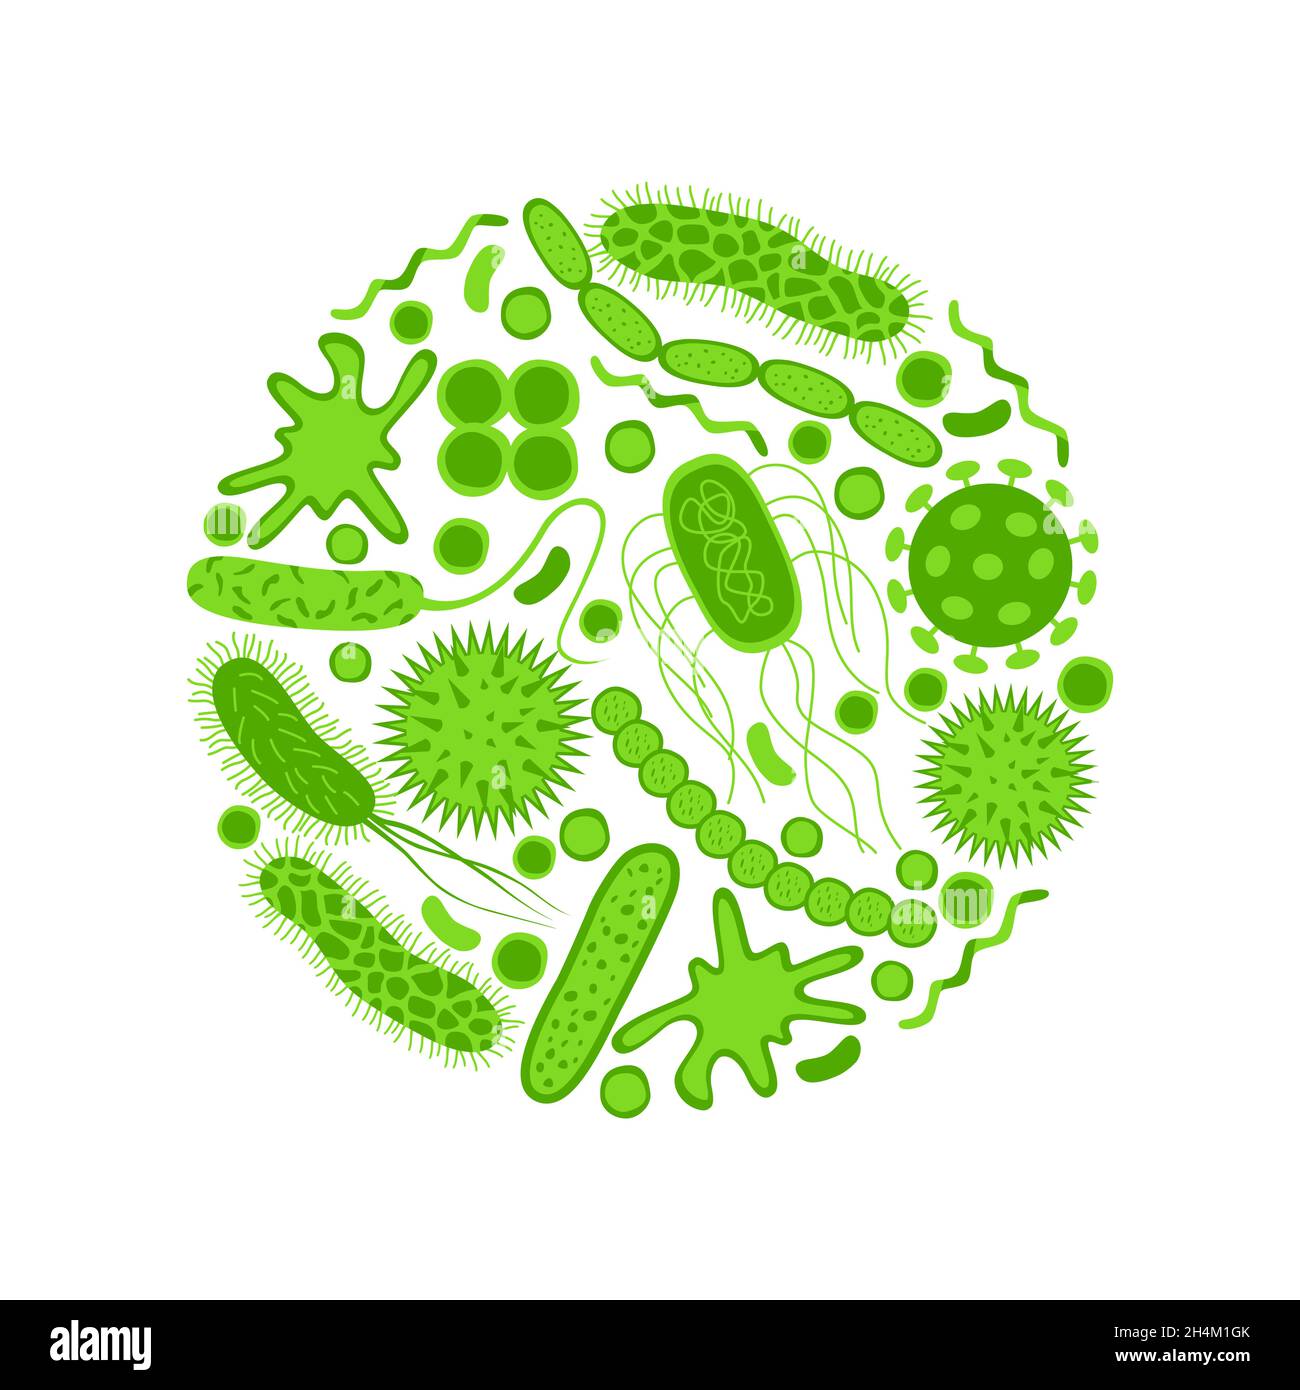 Symbole für grüne Keime und Bakterien werden isoliert auf weißem Hintergrund gesetzt. Form der Bakterienzelle: cocci, Bazillen, Spirilla. Vektorgrafik in flacher M. Stock Vektor